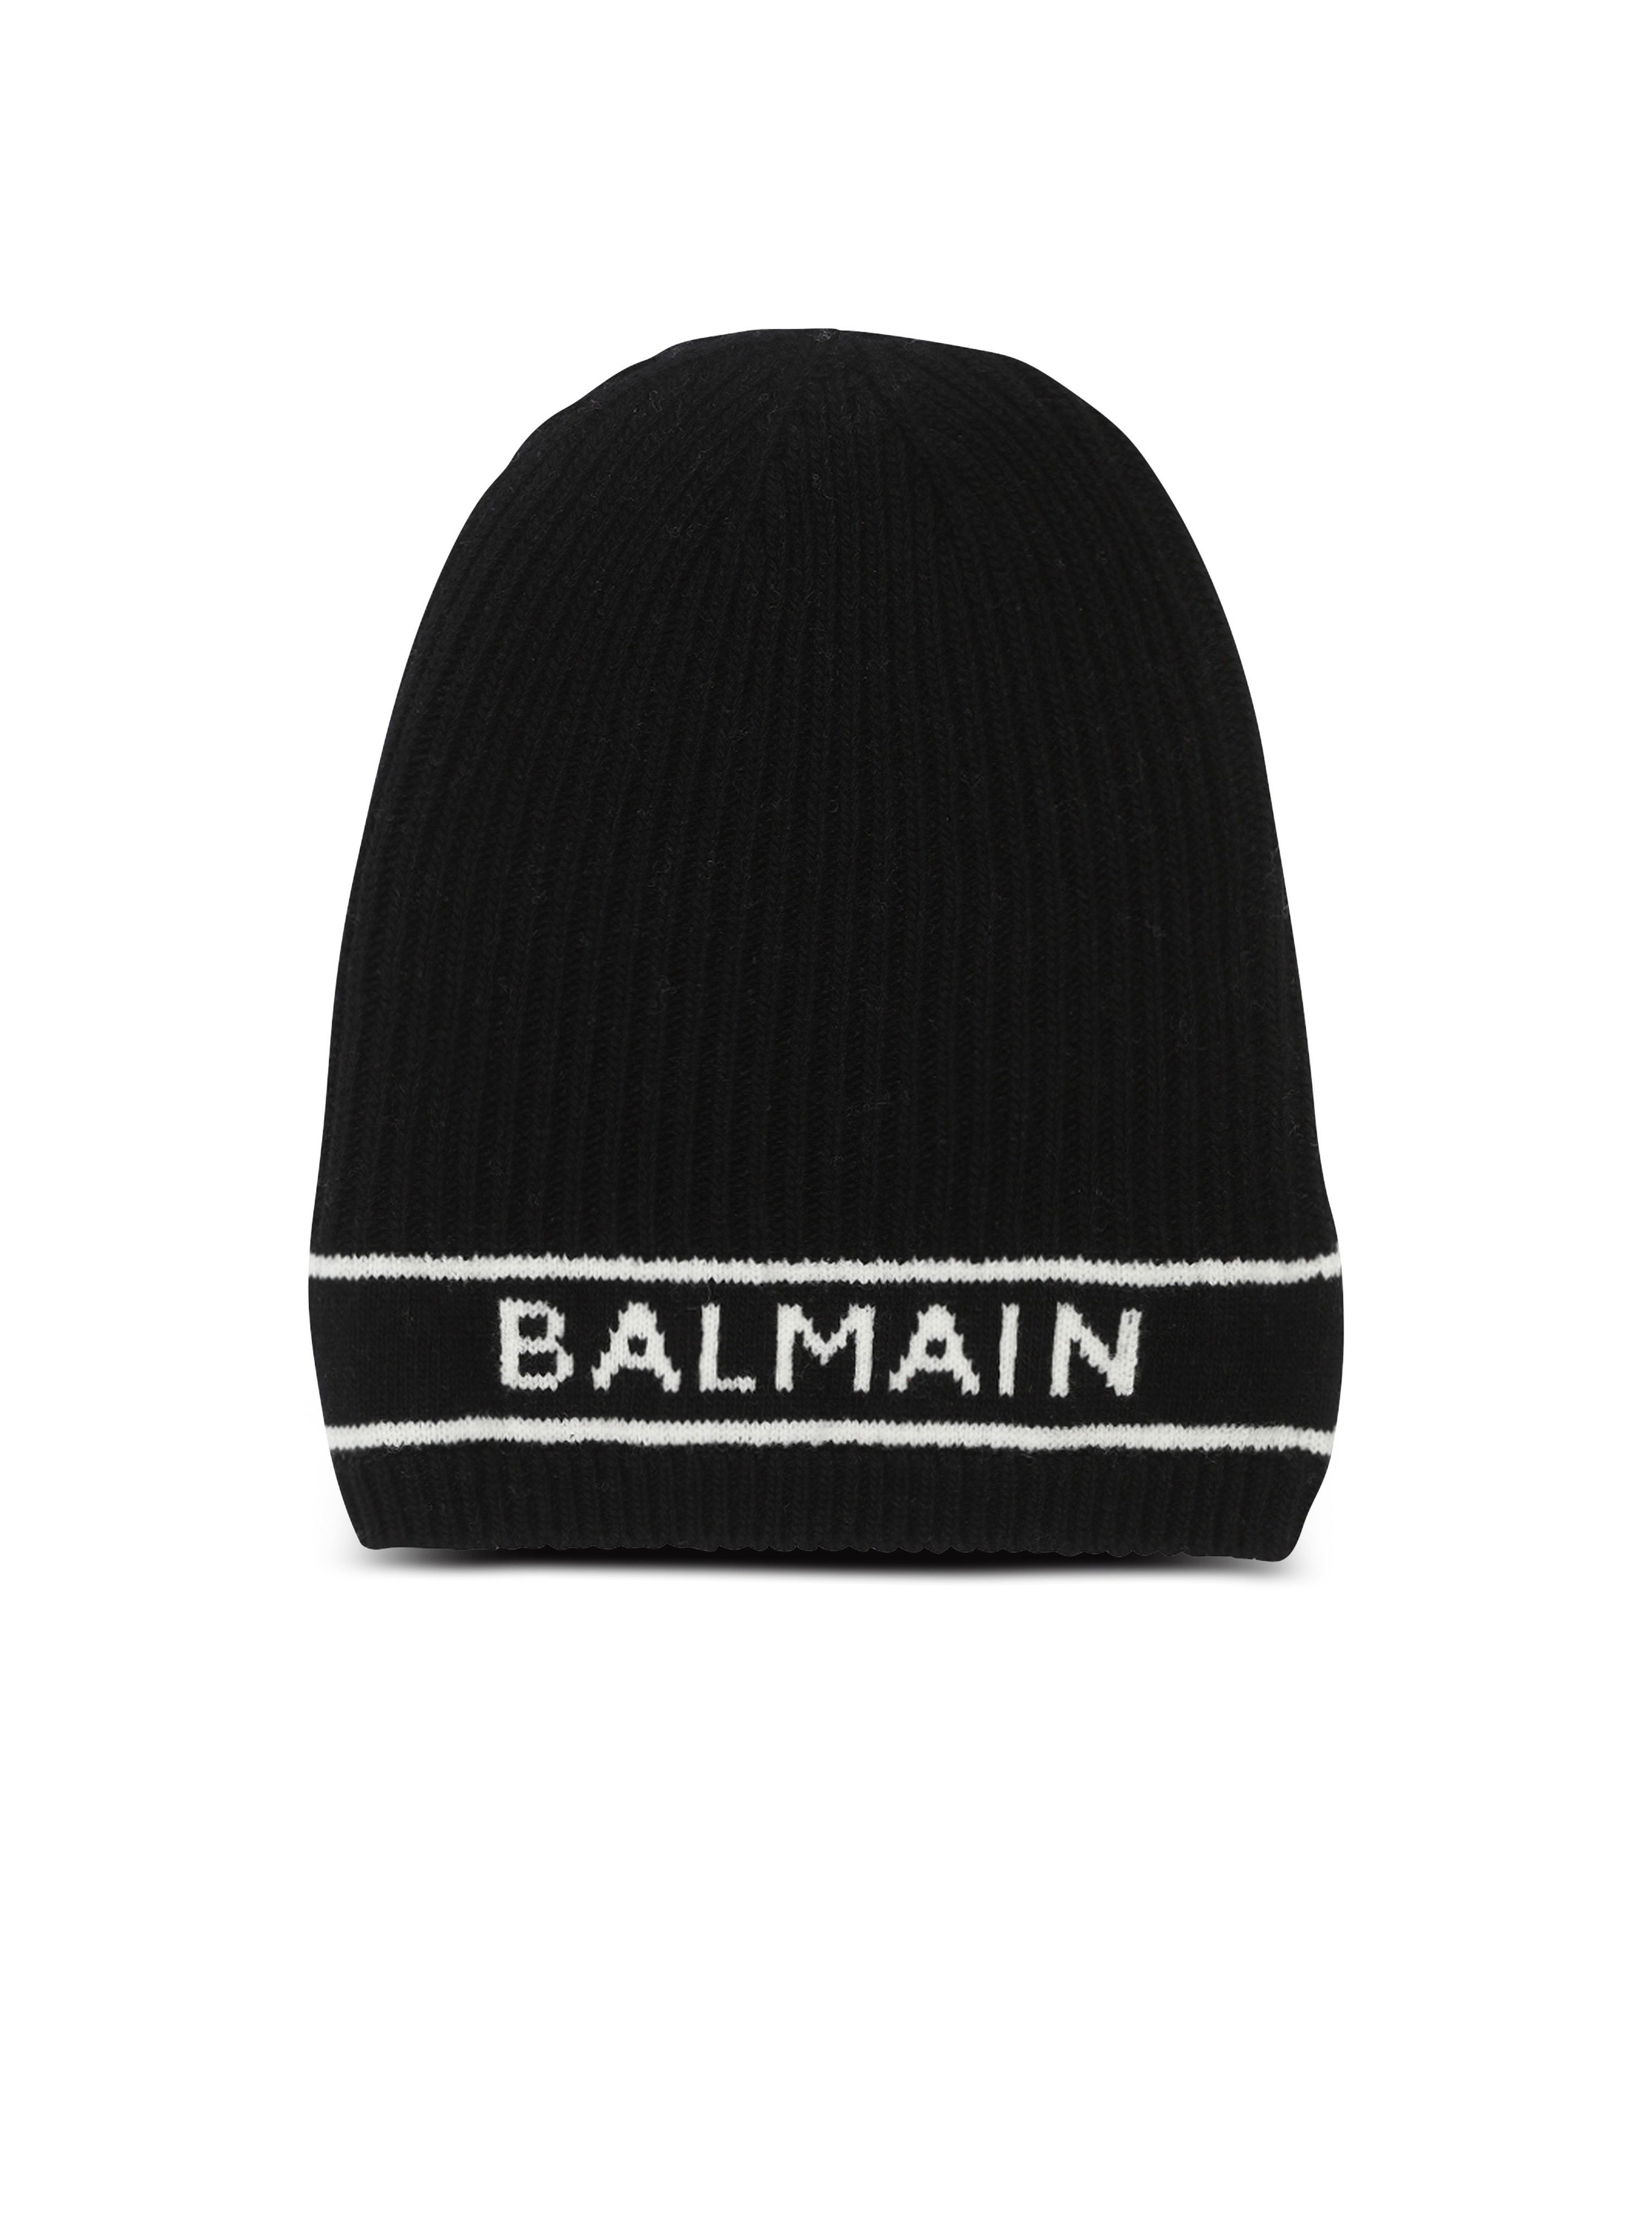 Wool beanie with Balmain logo, black